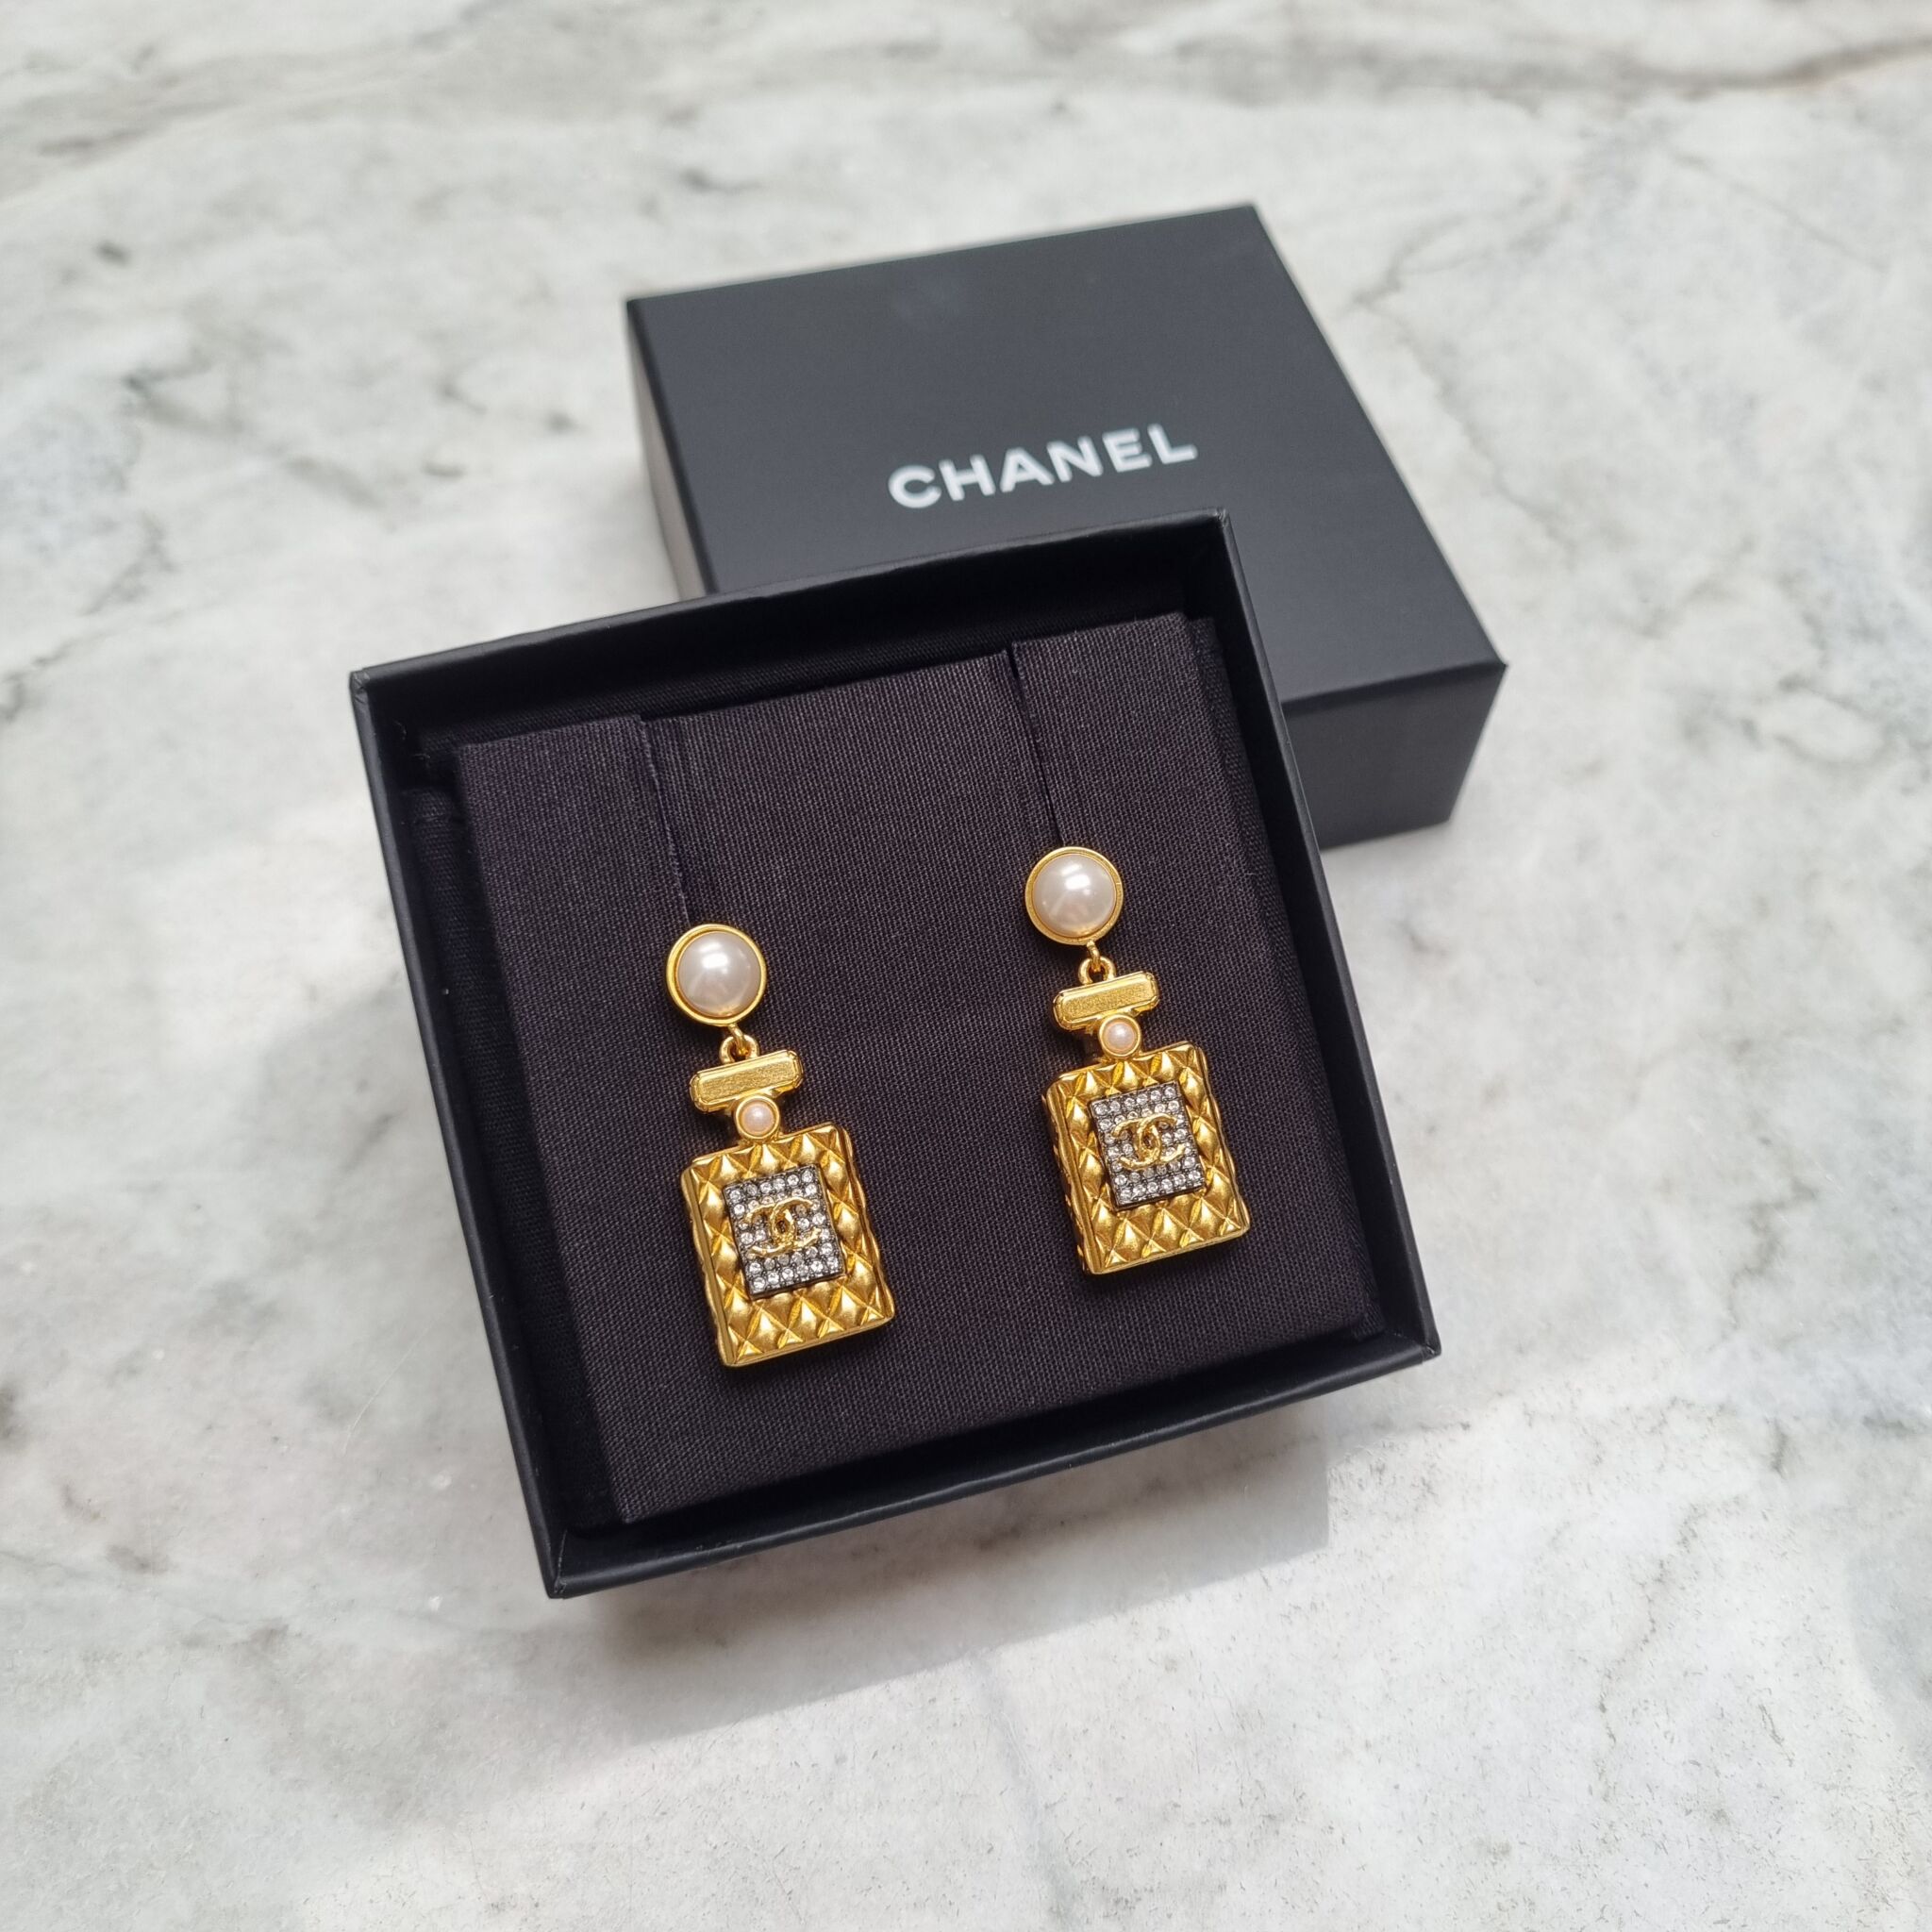 Chanel Perfume Bottle Earrings, Gold - Laulay Luxury